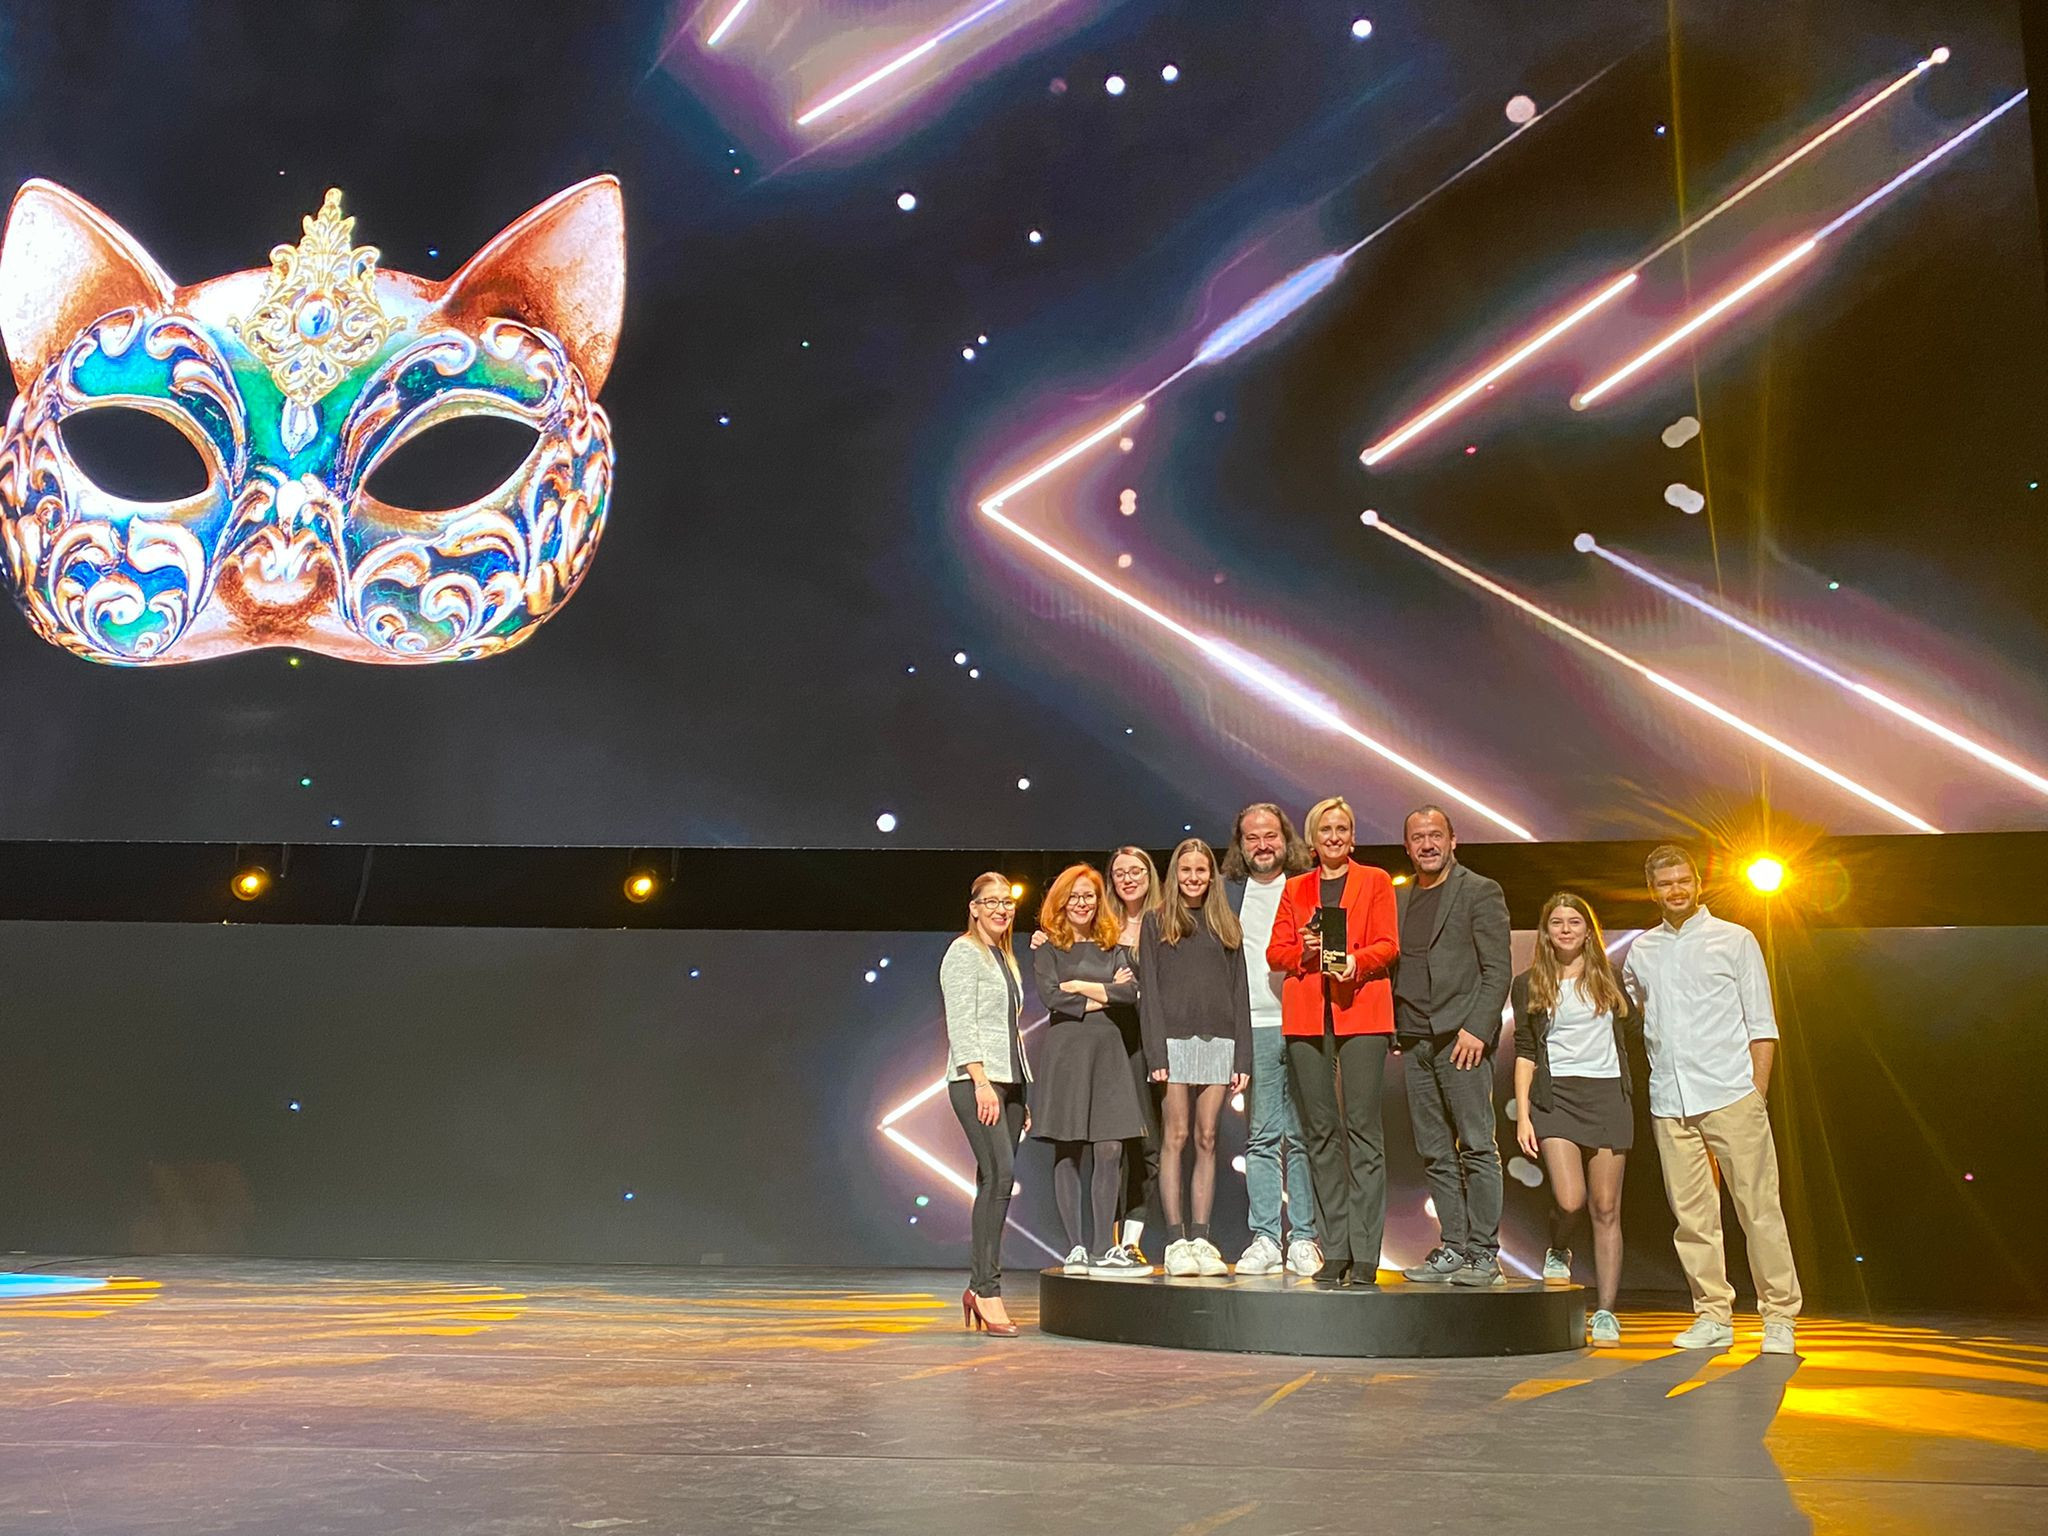 yıldız entegre awarded in 3 different categories at the 17th felis awards